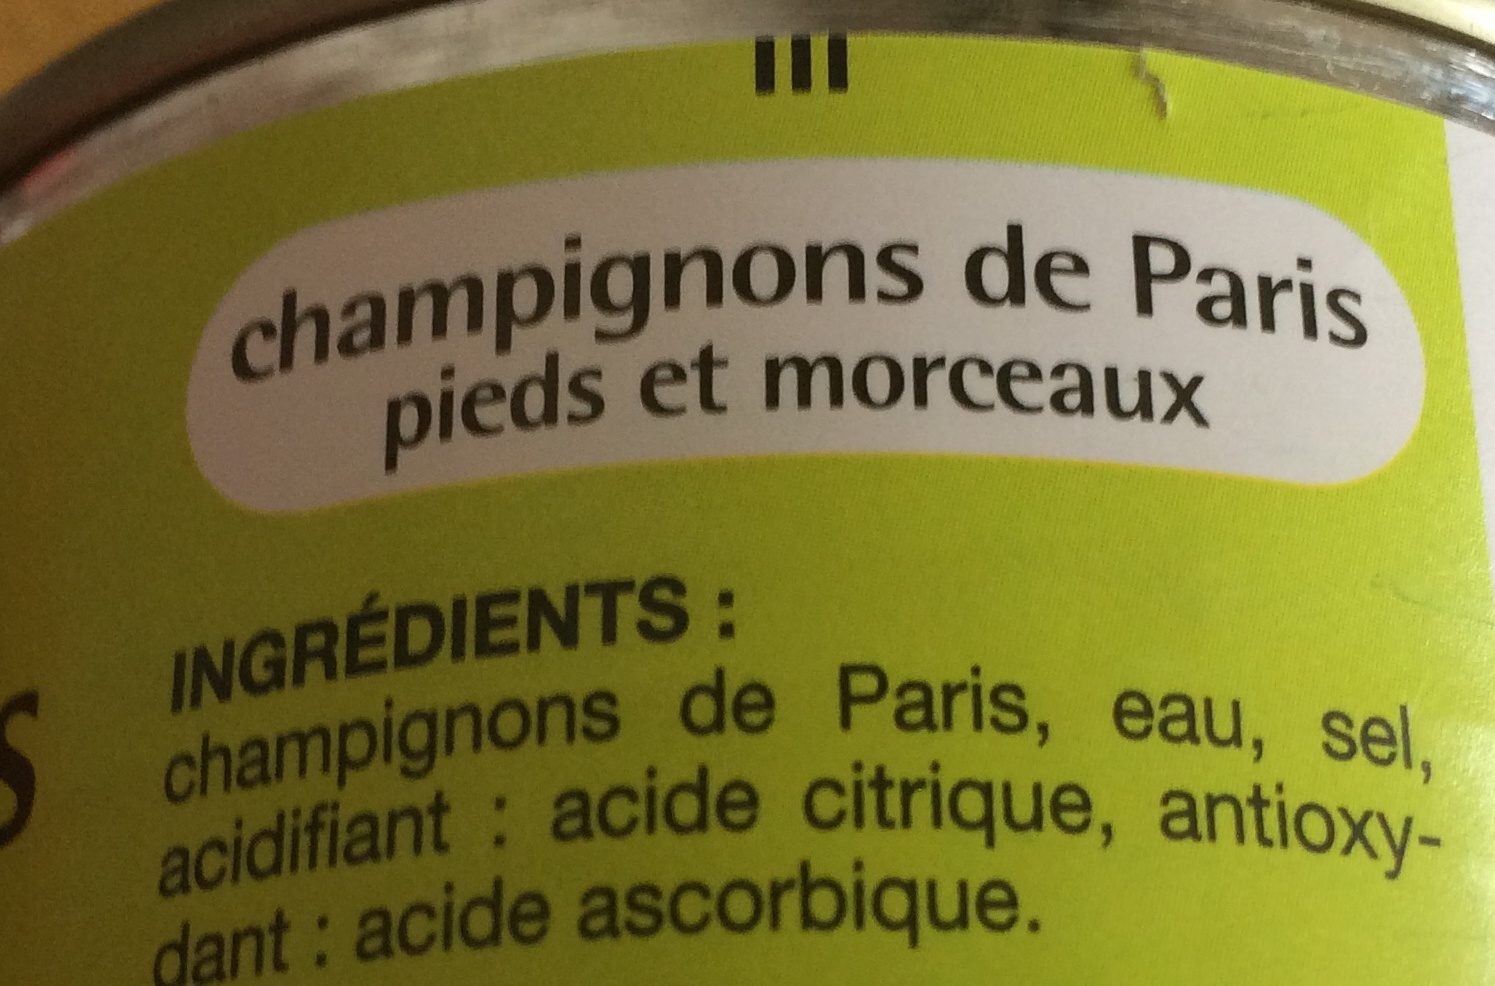 champignons de Paris pieds et morceaux - Ingredients - fr